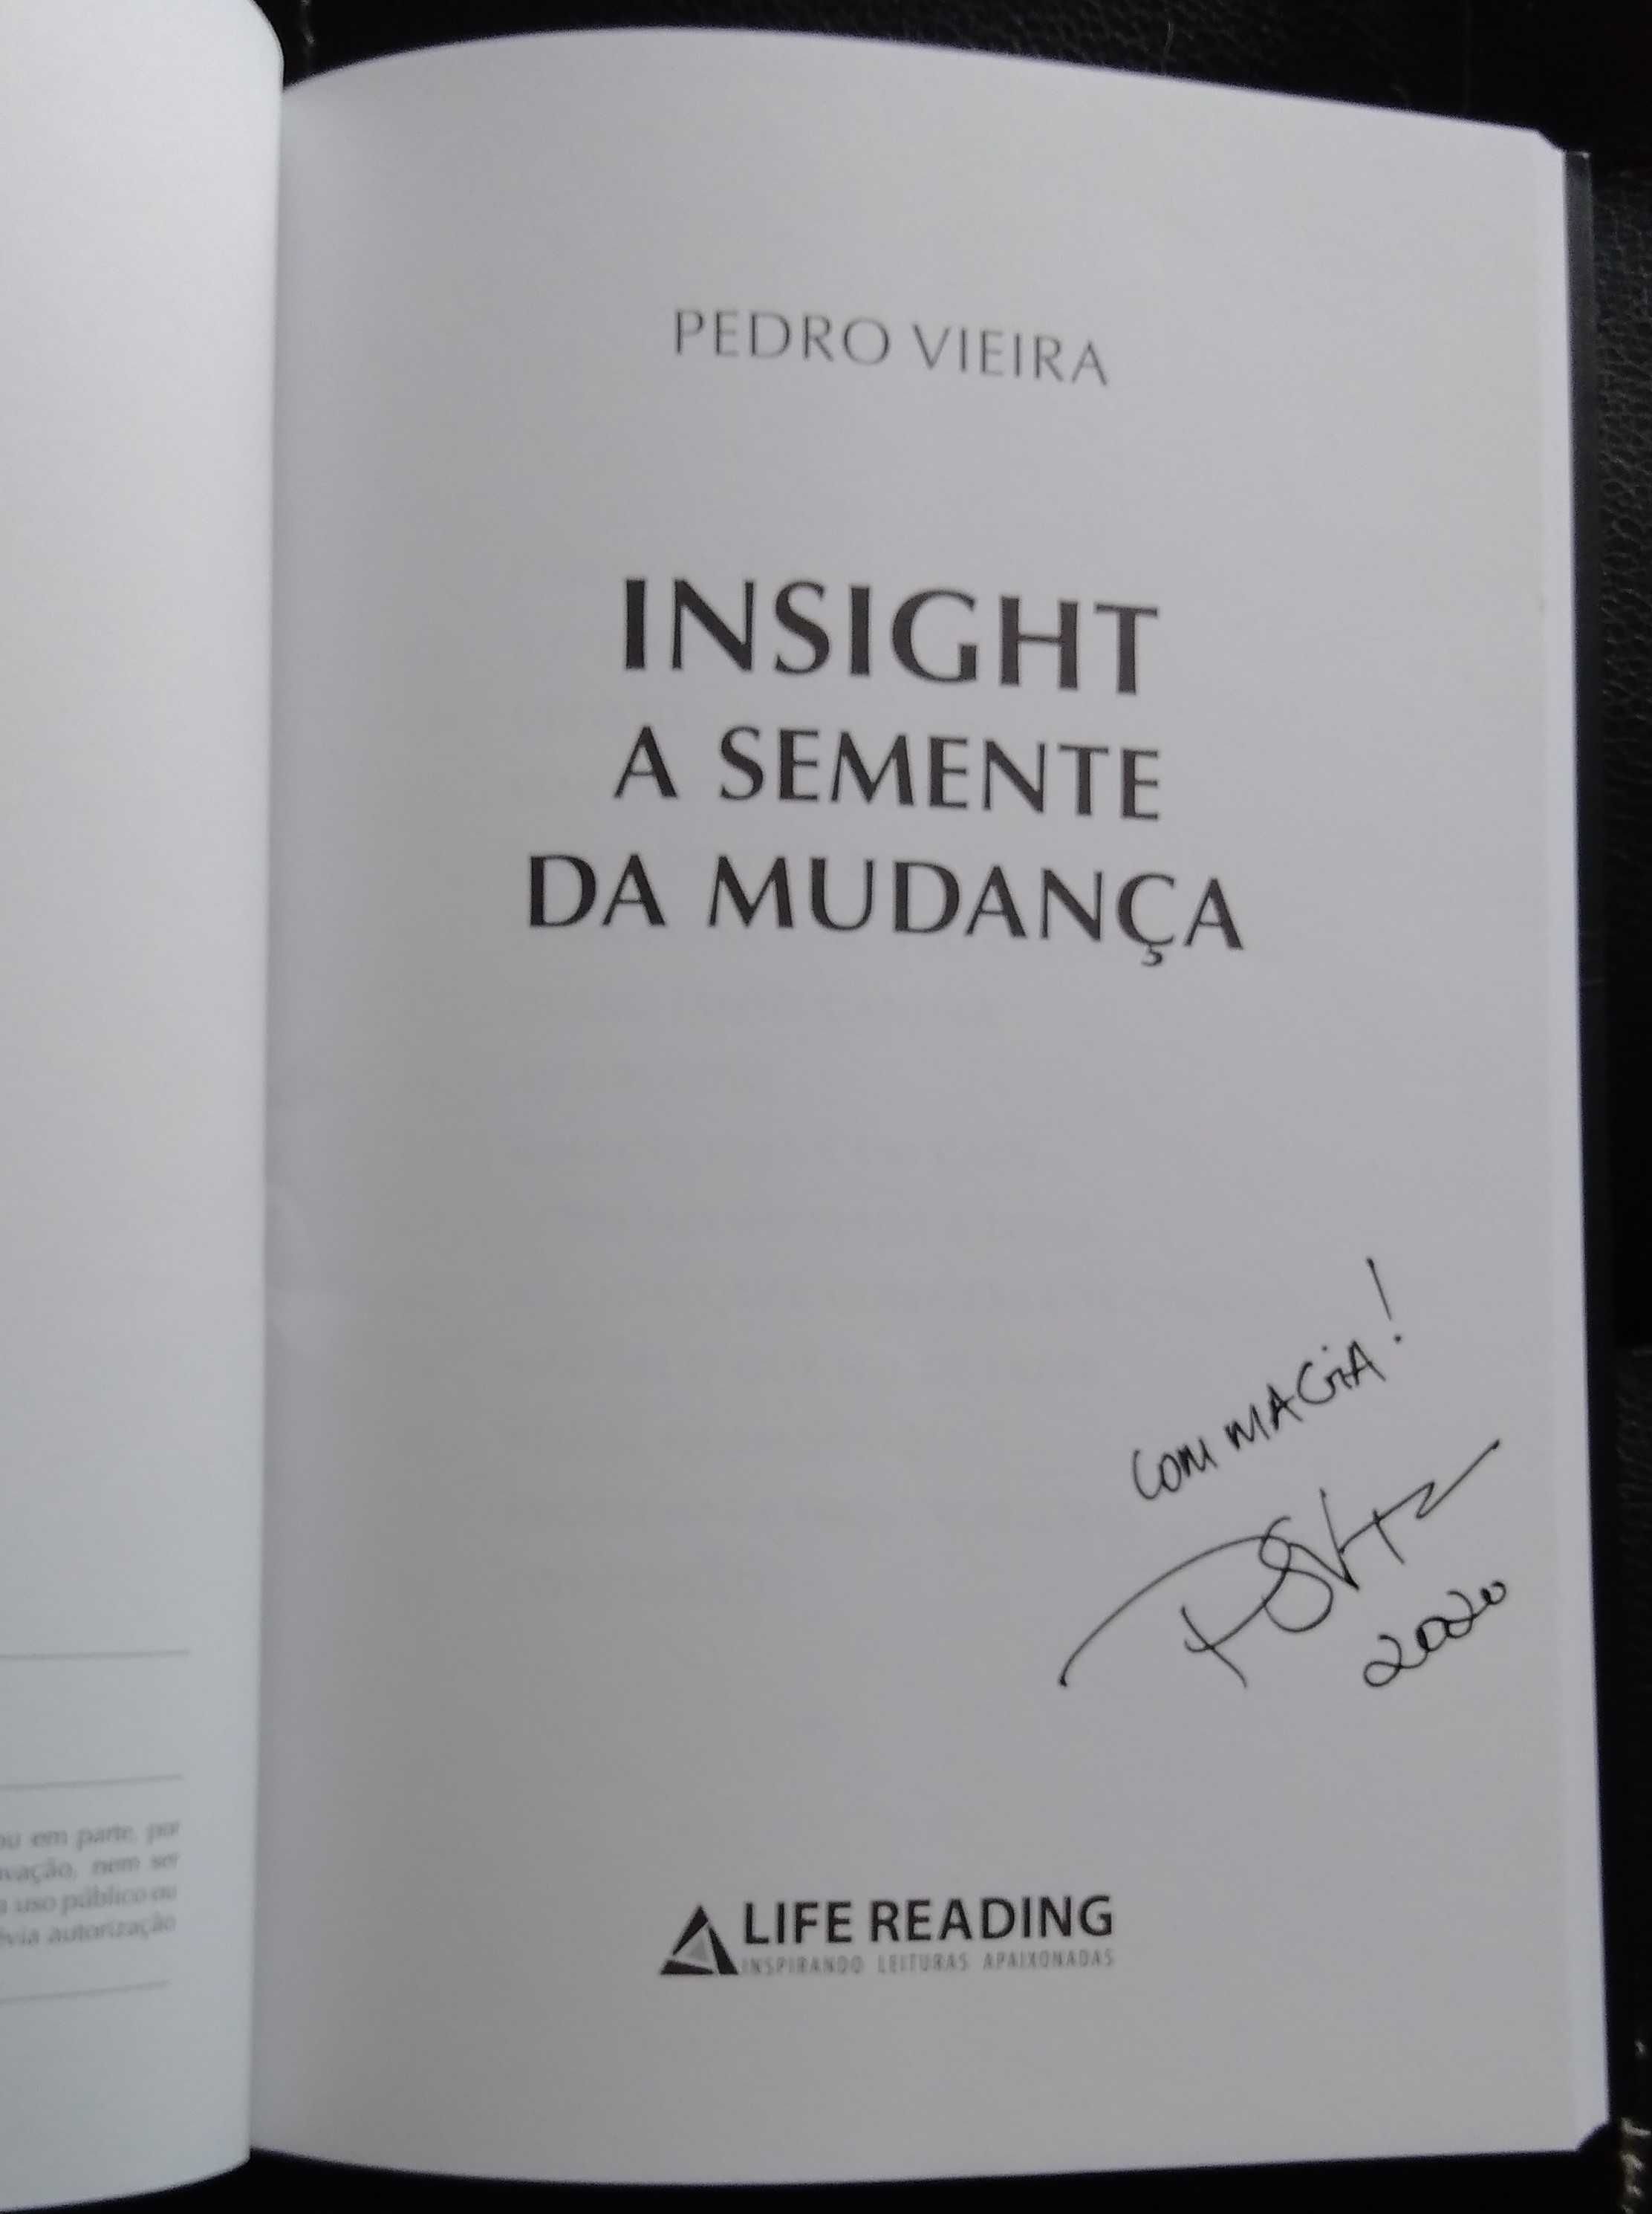 Livro "Insight - A semente da Mudança", de Pedro Vieira